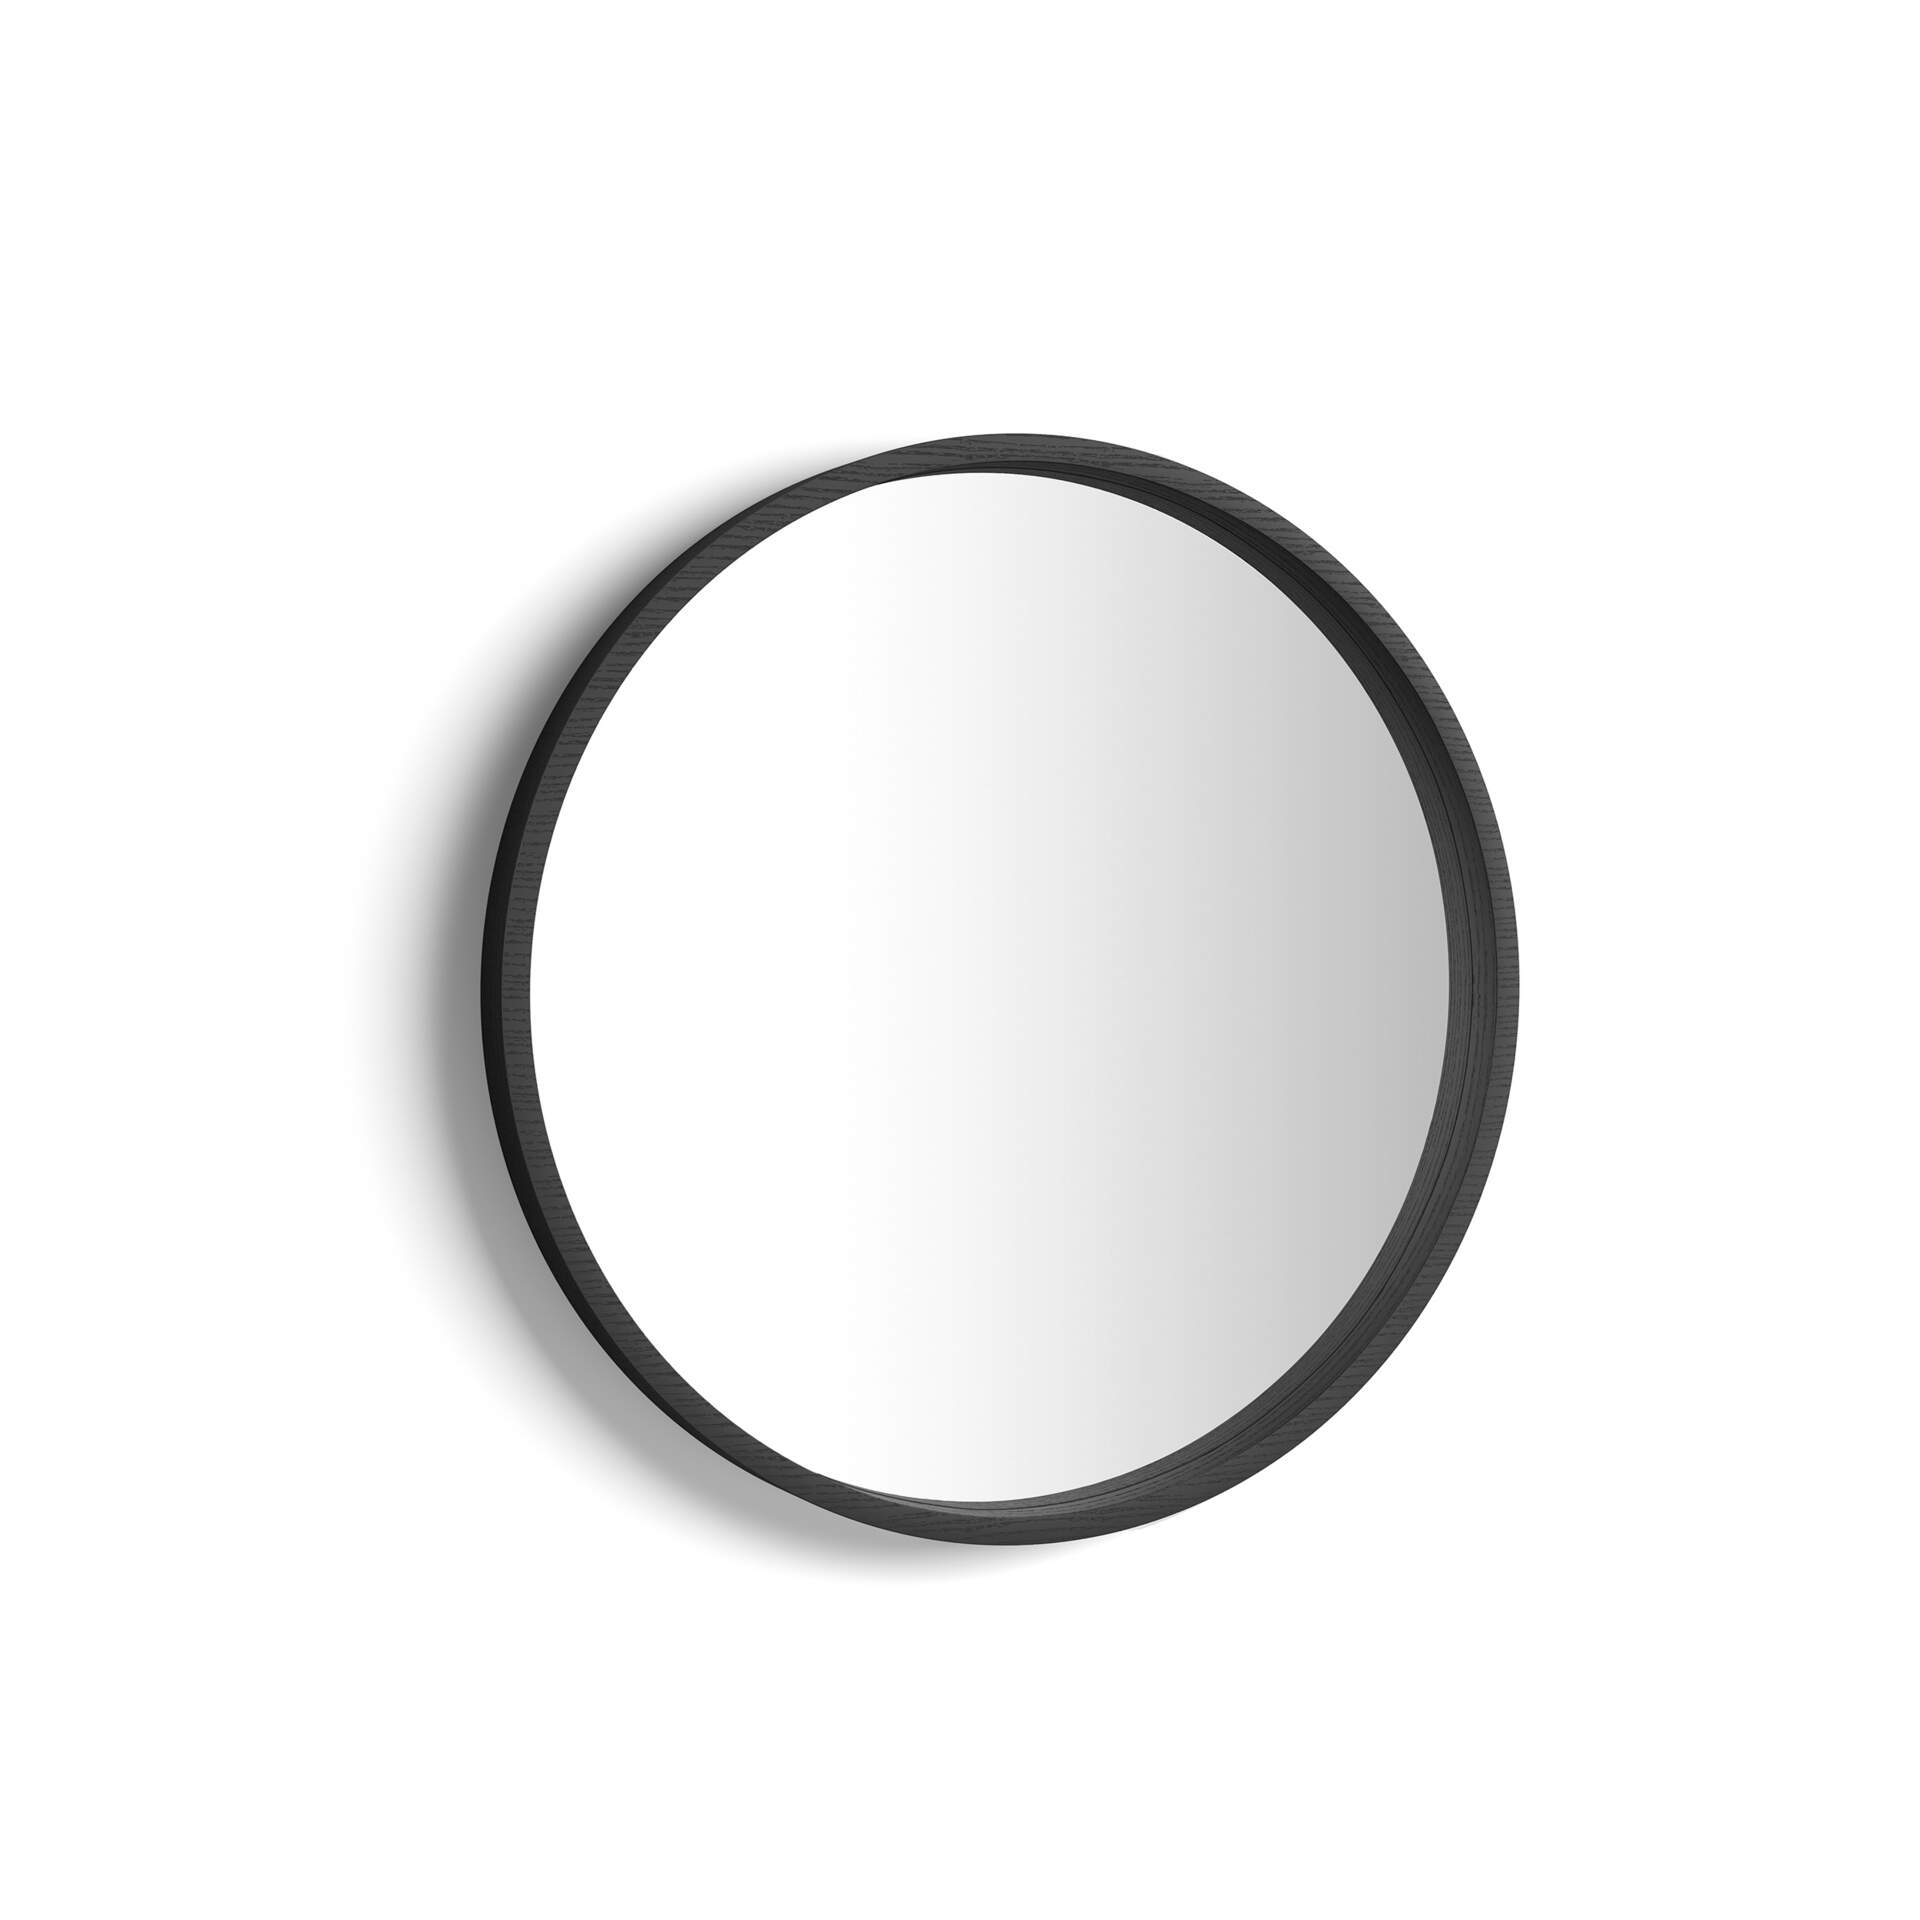 Mobili Fiver Espejo redondo Olivia, diámetro 64 cm, color Madera negra